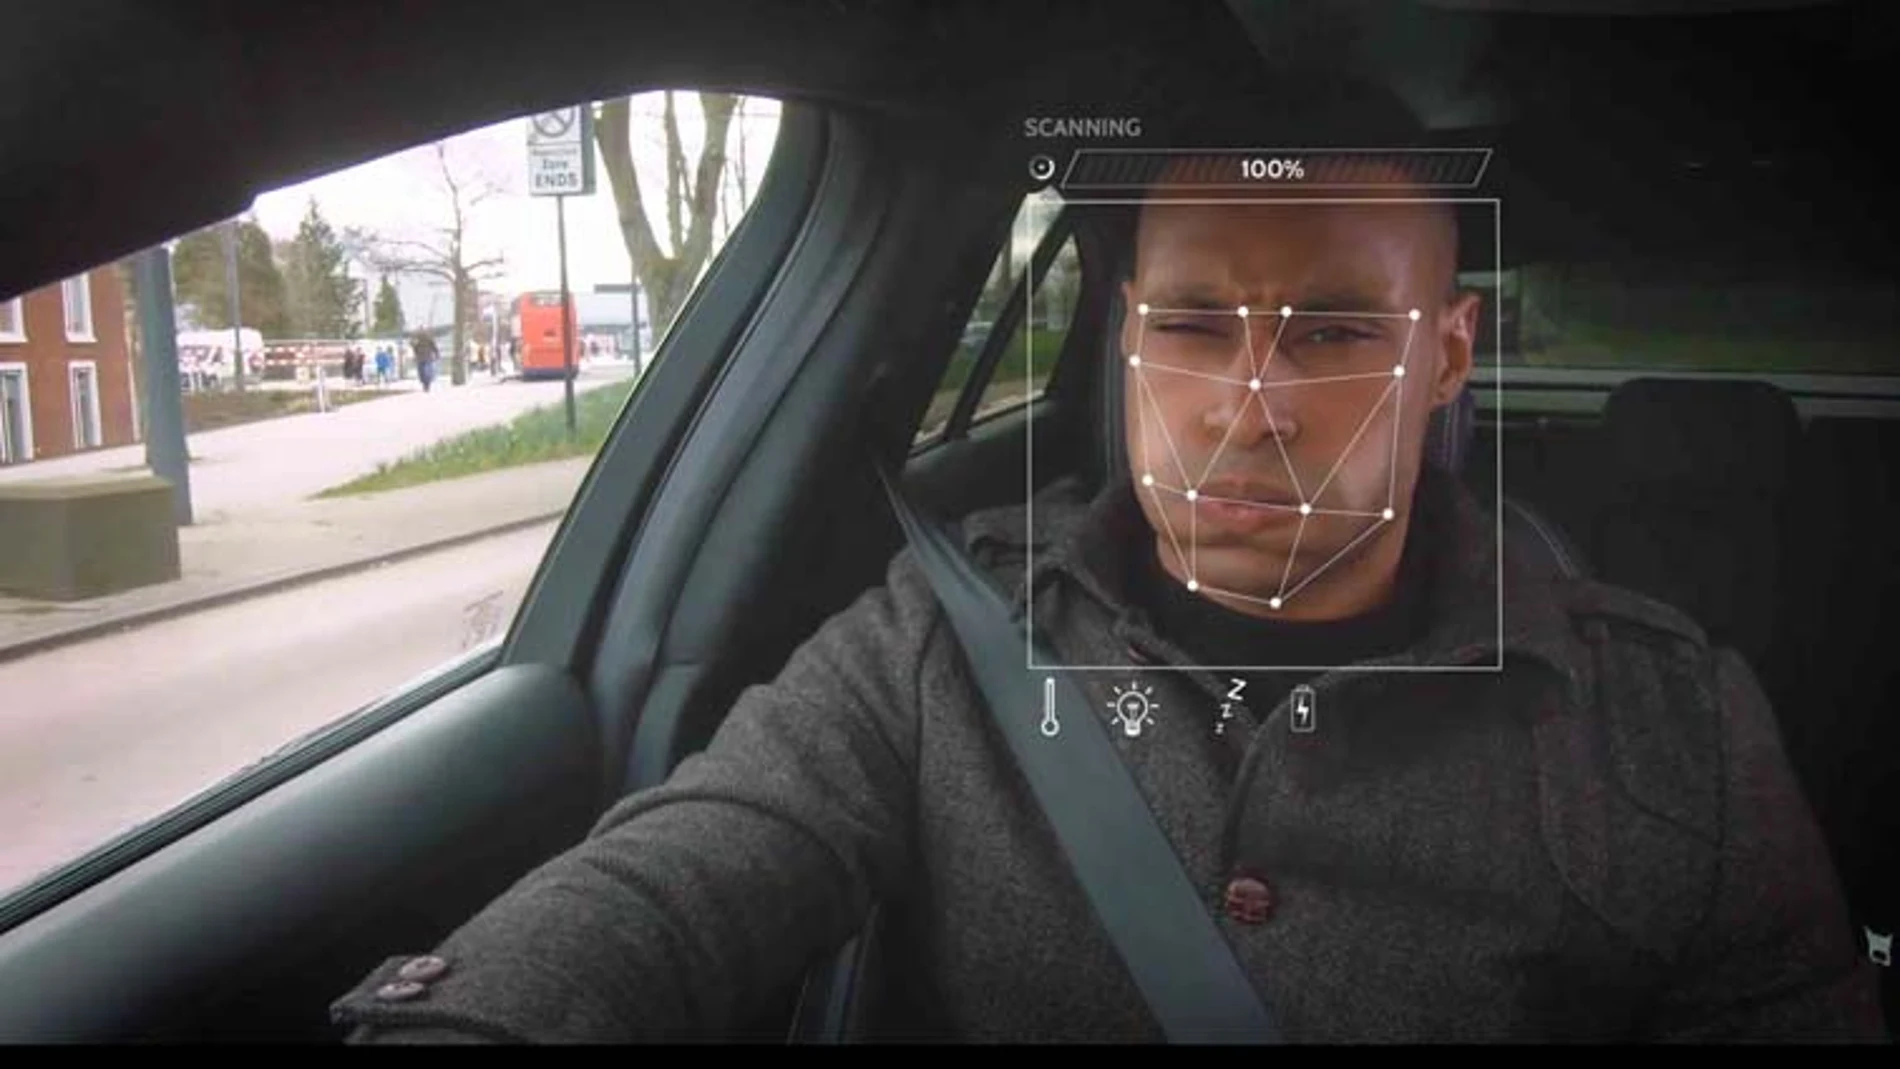 La cámara analiza los gestos del conductor y puede modificar algunos parámetros del habitáculo para que esté cómodo.